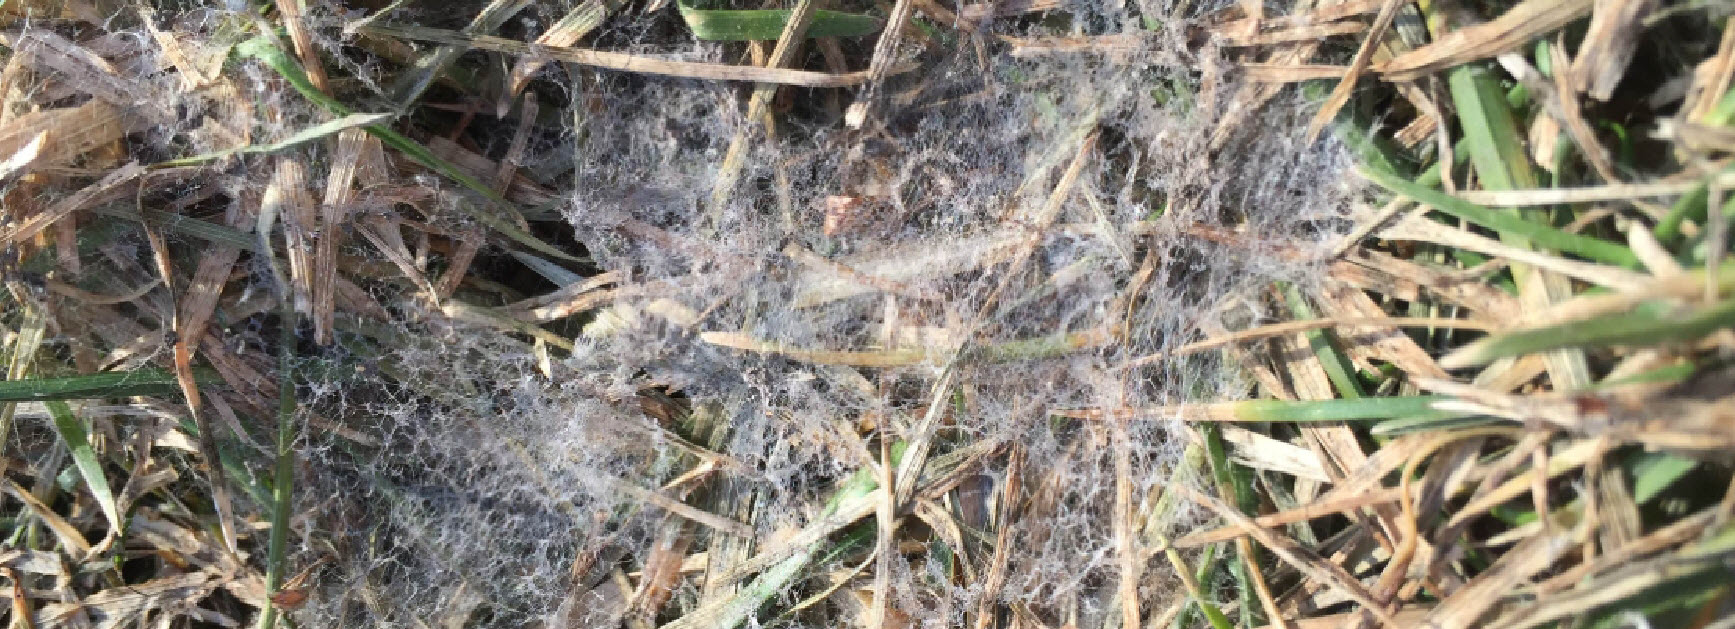 grey snow mold lawn disease